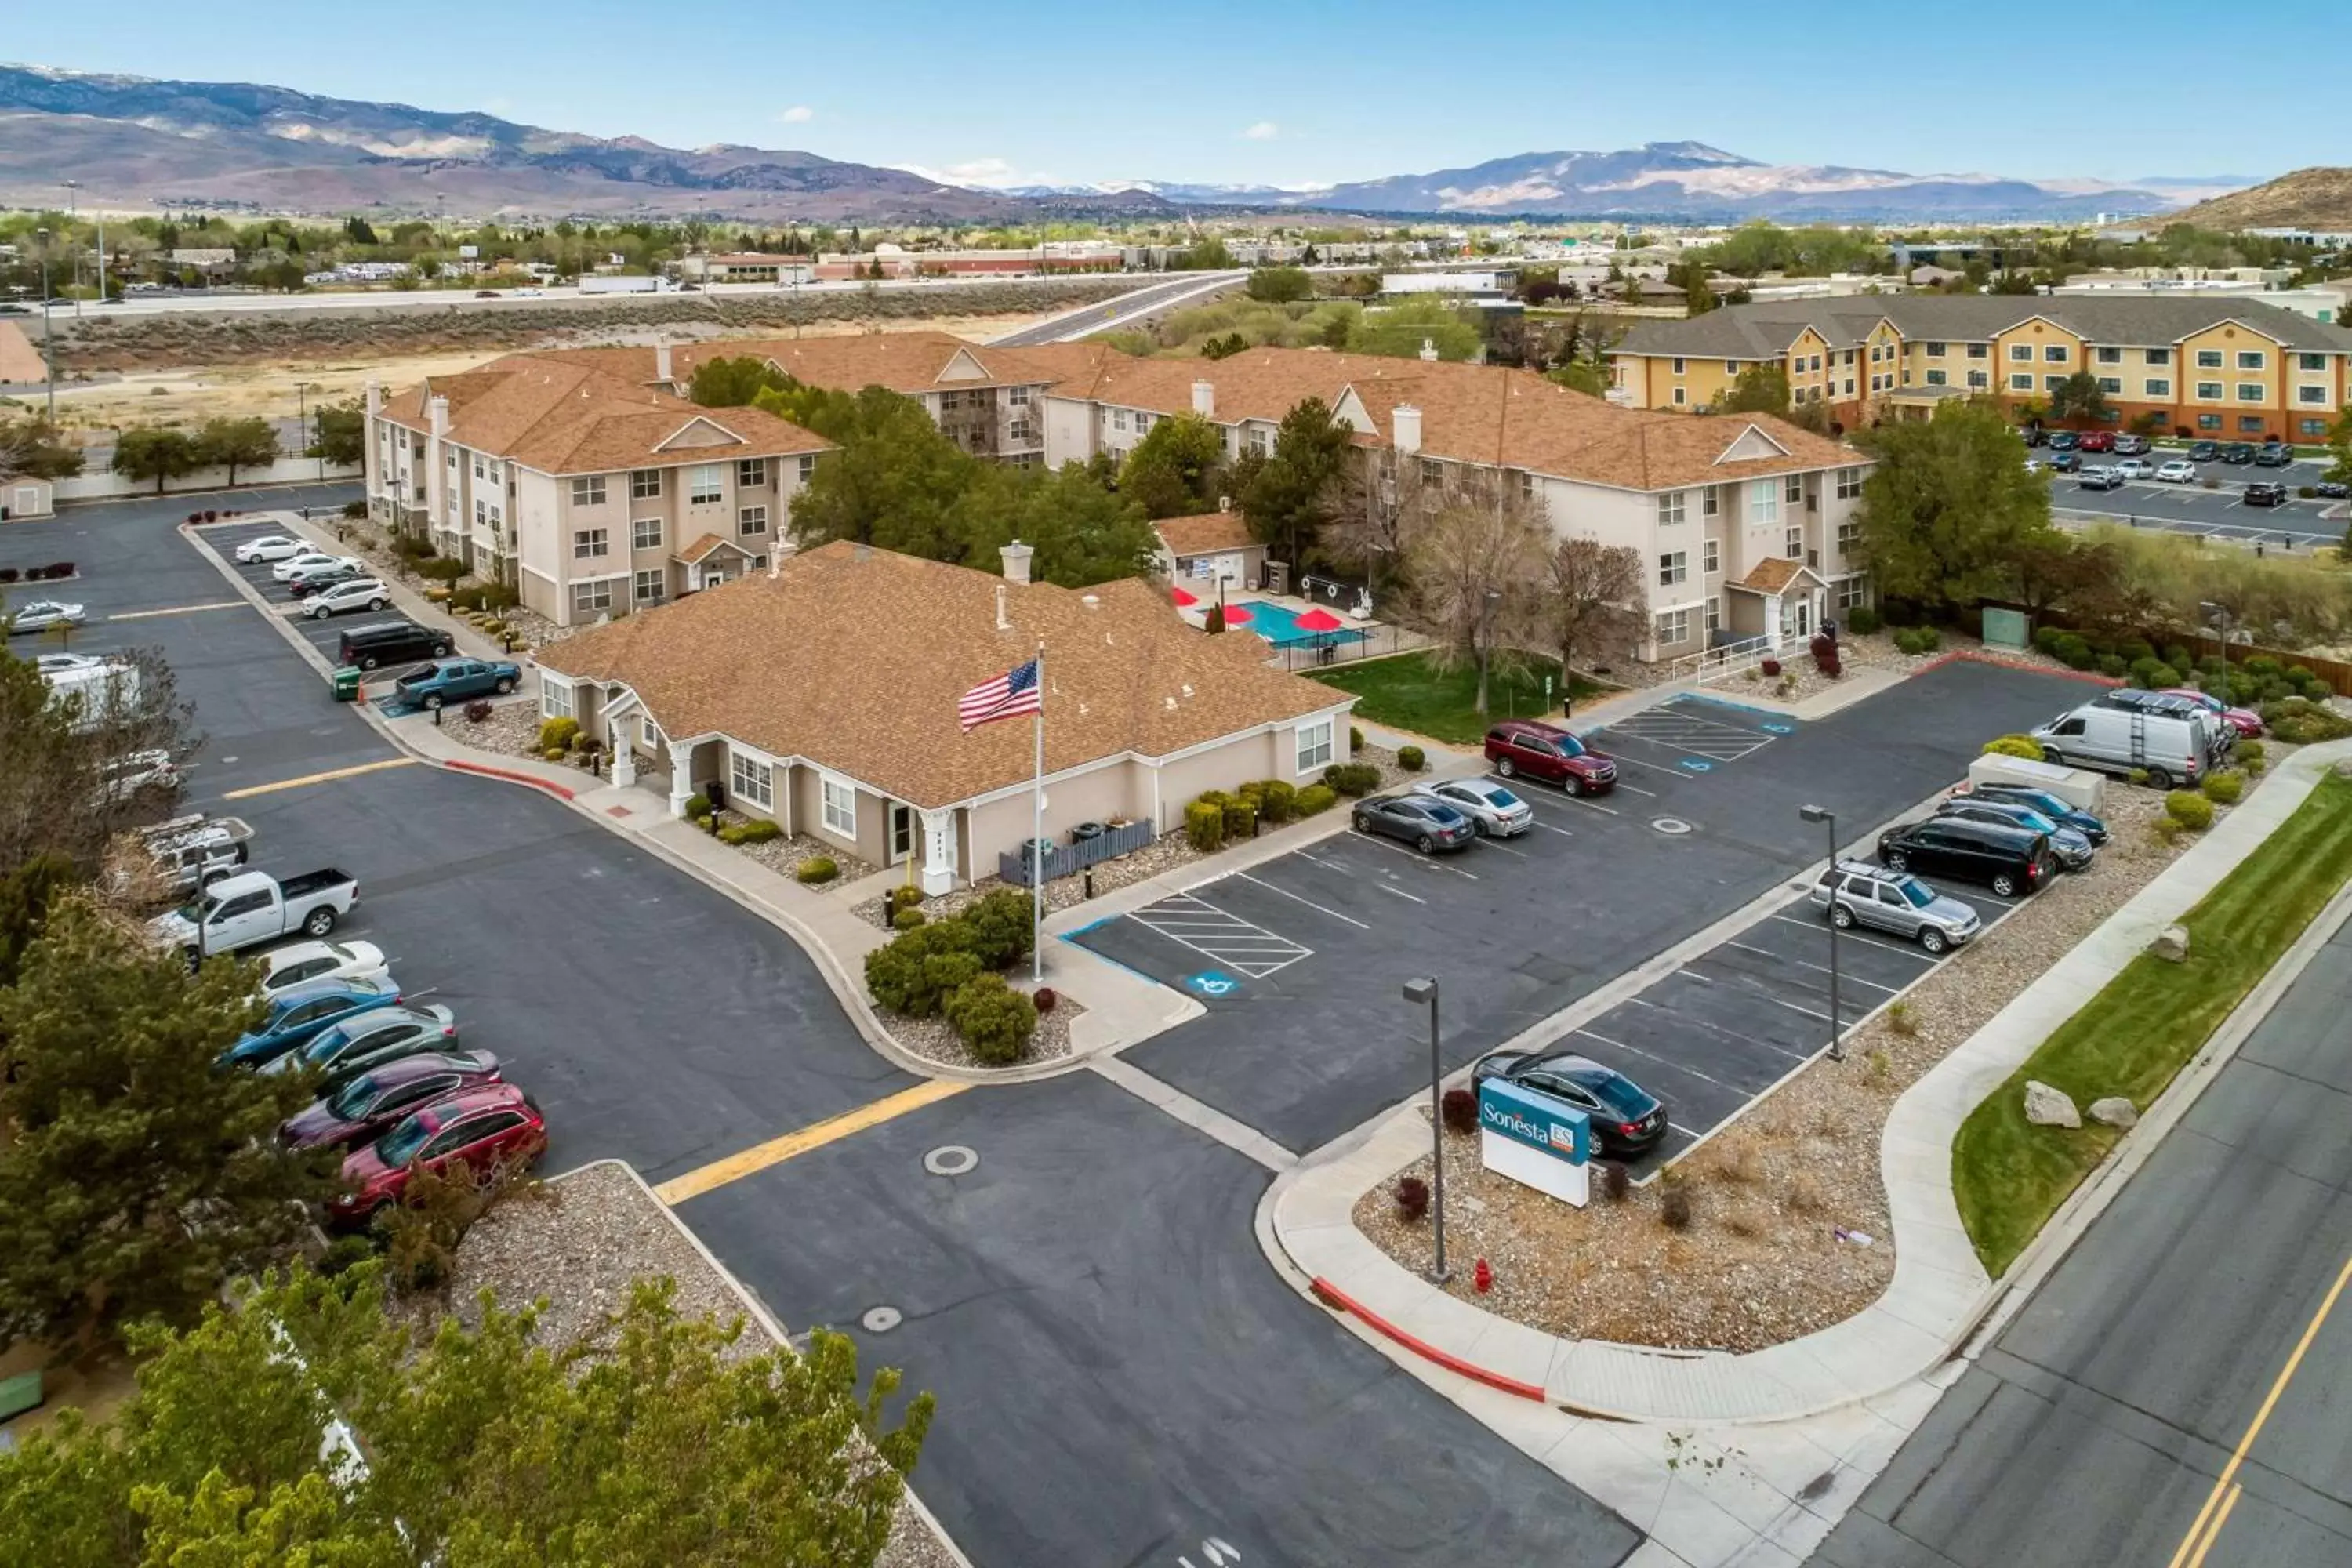 Property building in Sonesta ES Suites Reno